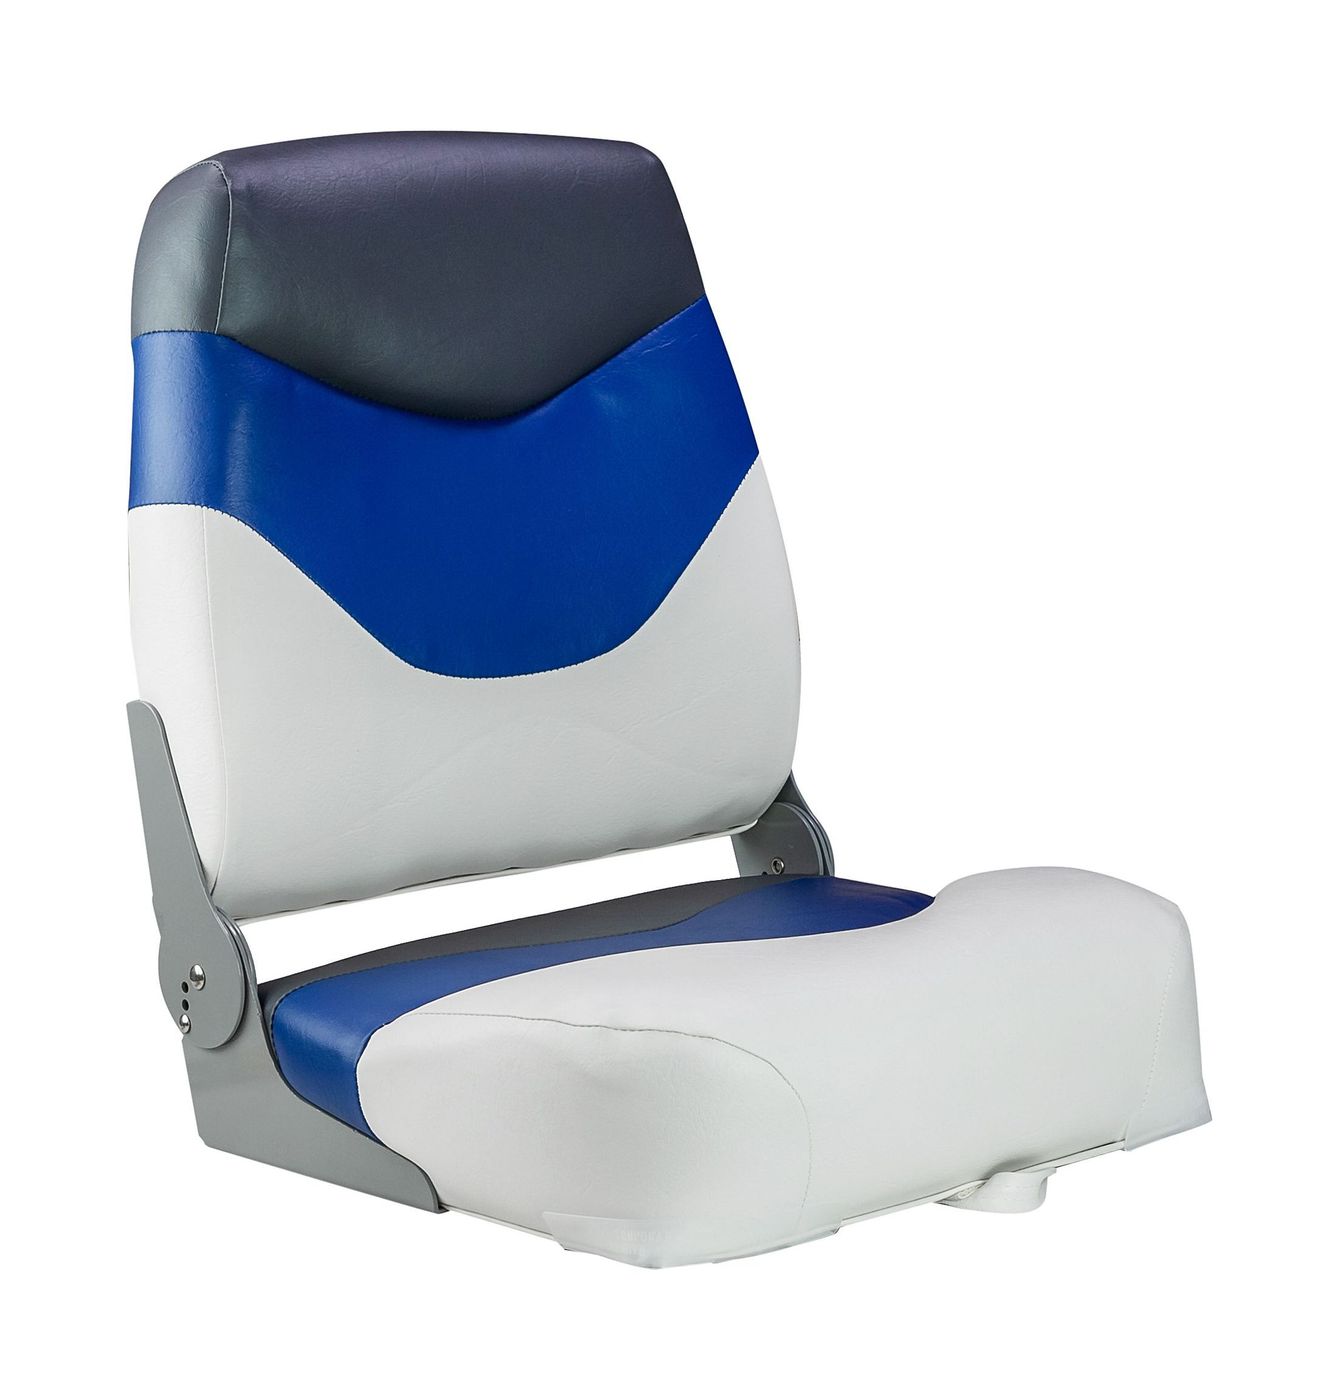 Кресло мягкое складное Premium, обивка винил, цвет белый/синий/угольный, Marine Rocket 75128WBC-MR сиденье мягкое pro casting обивка синий винил 75104b